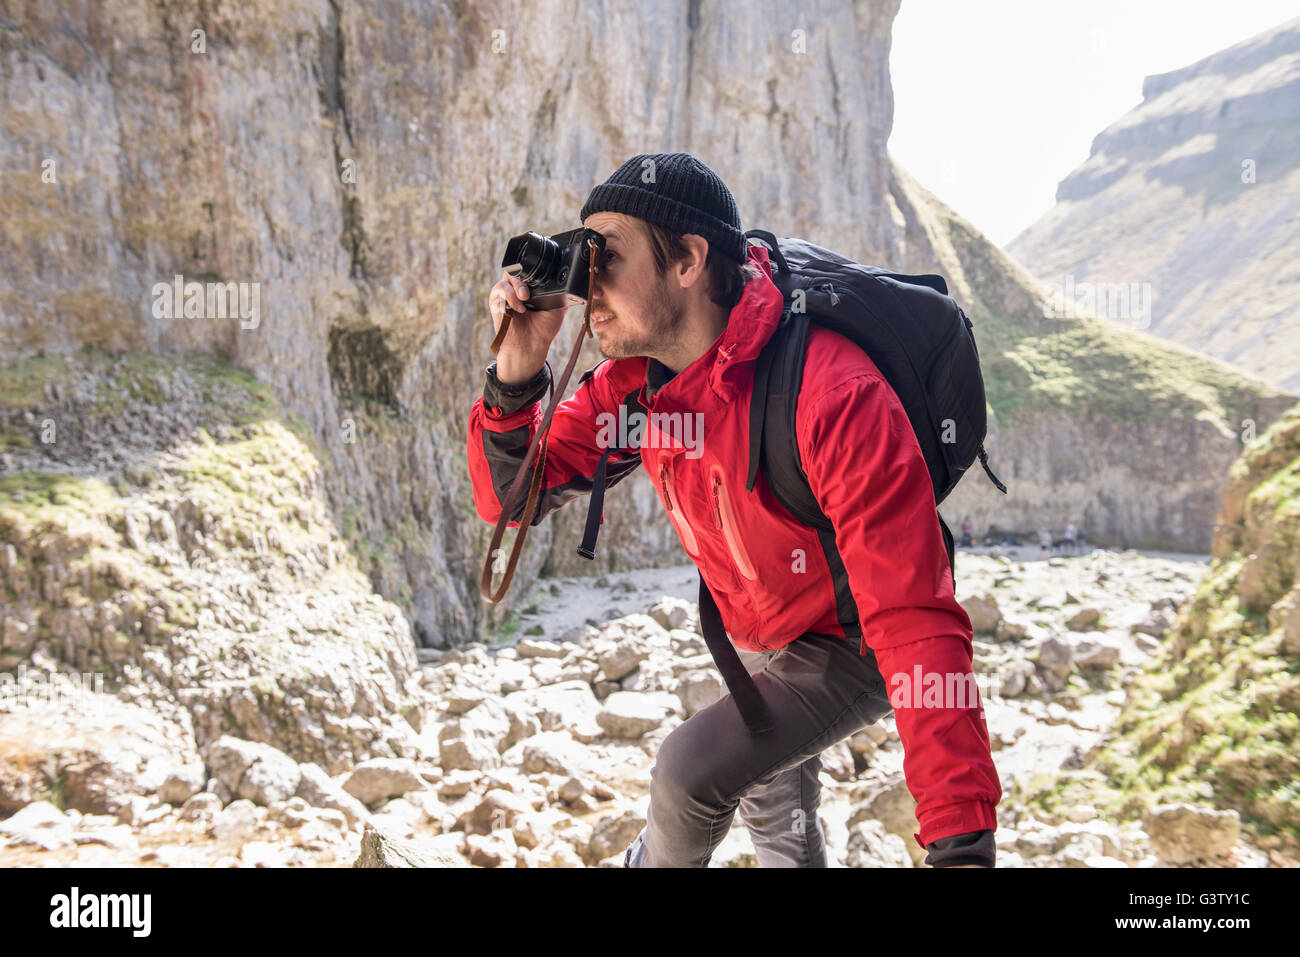 Ein Bergsteiger klettern über die Felsen im unwegsamen Gelände zu fotografieren. Stockfoto